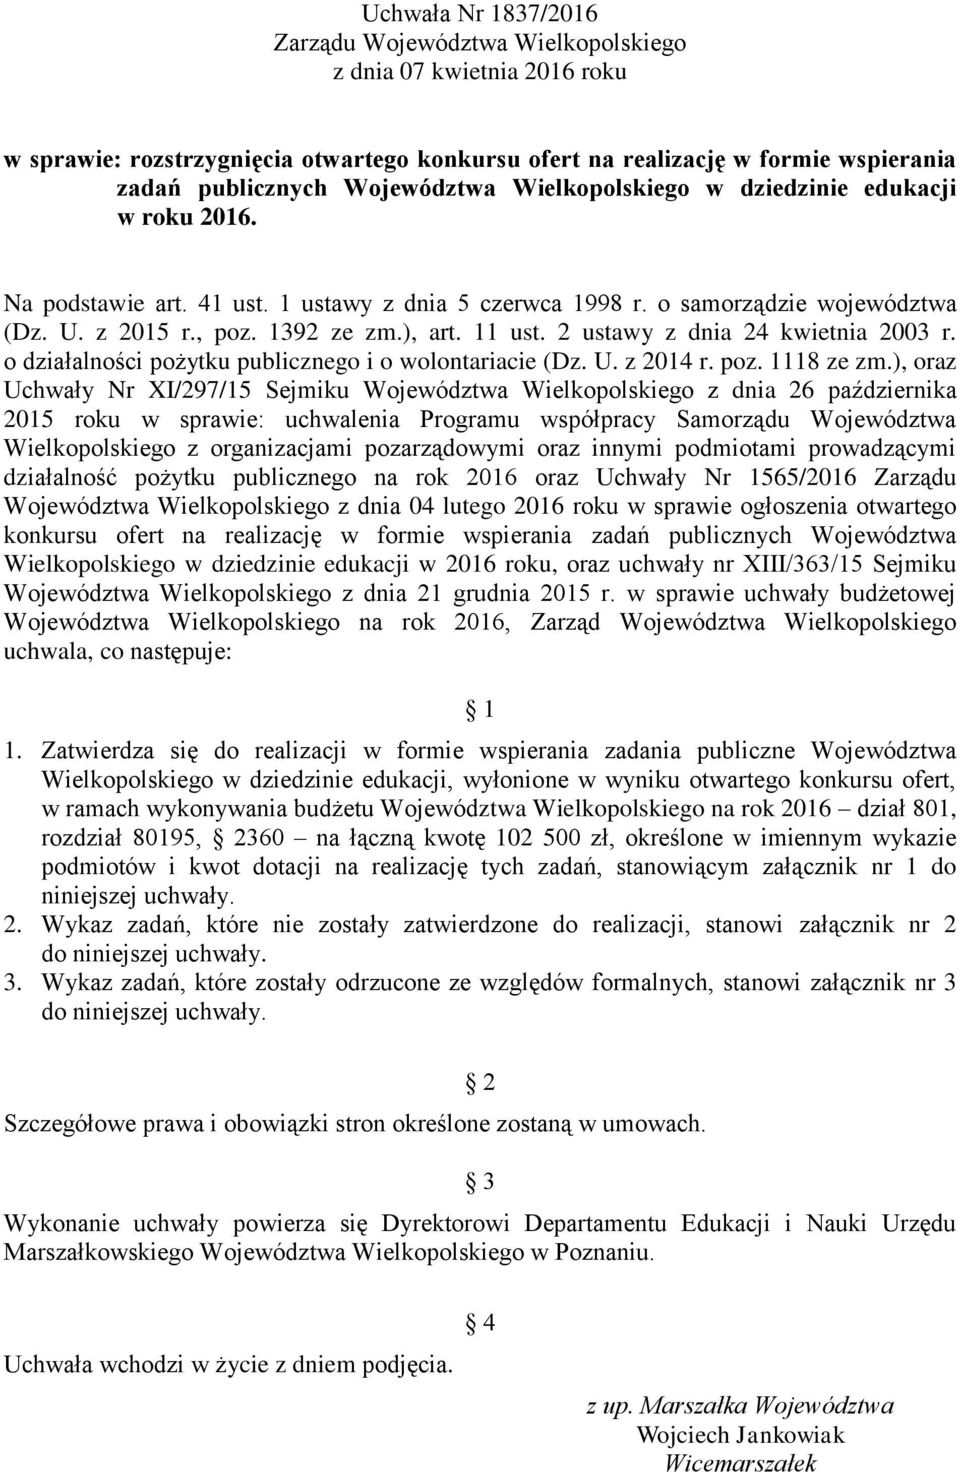 2 ustawy z dnia 24 kwietnia 2003 r. o działalności pożytku publicznego i o wolontariacie (Dz. U. z 2014 r. poz. 1118 ze zm.